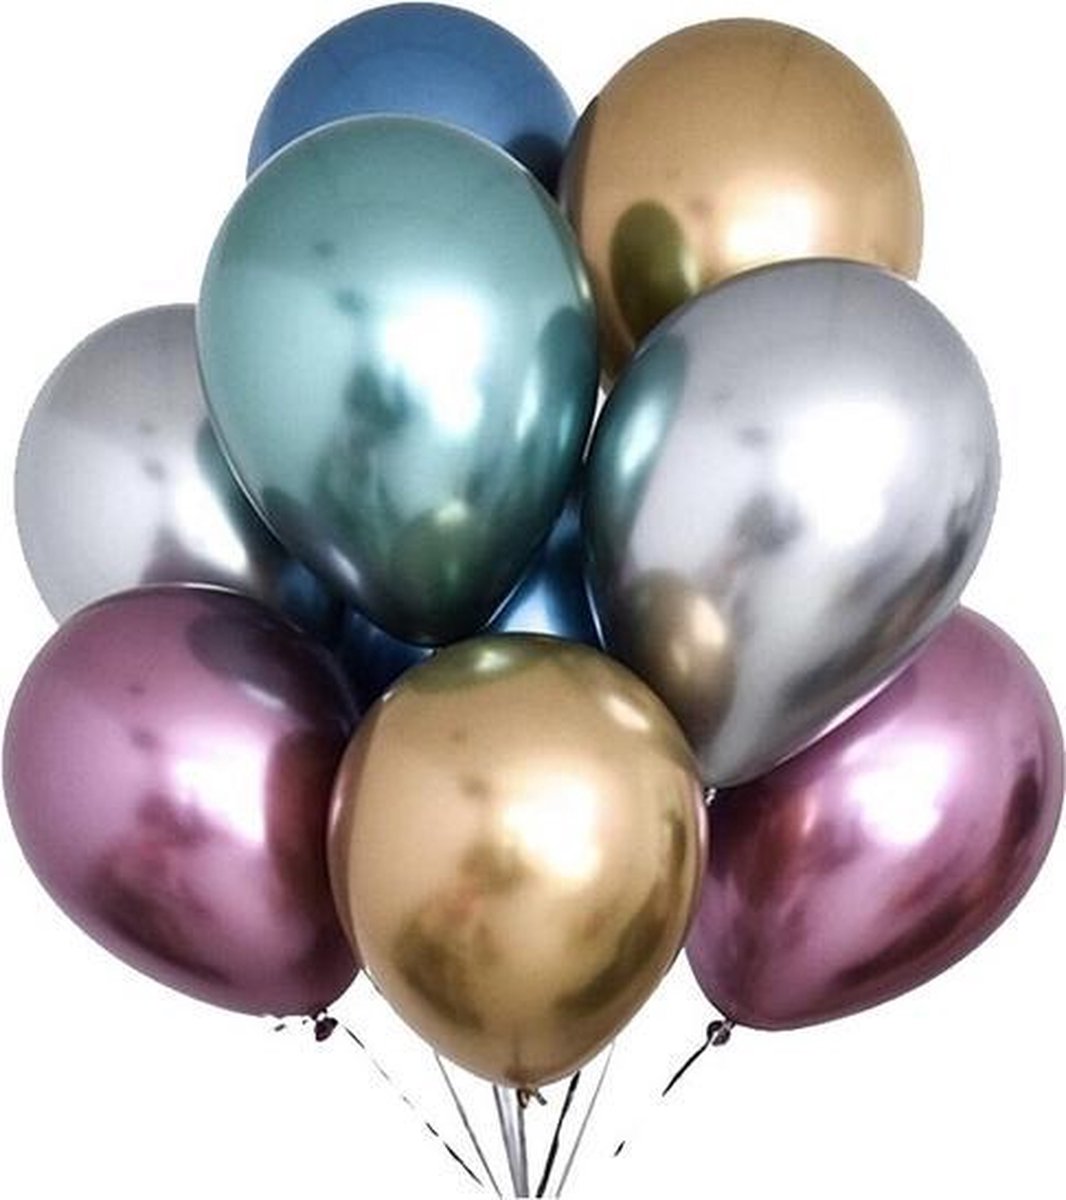 50 st. chique party assortiment metallic ballonnen - verjaardag 